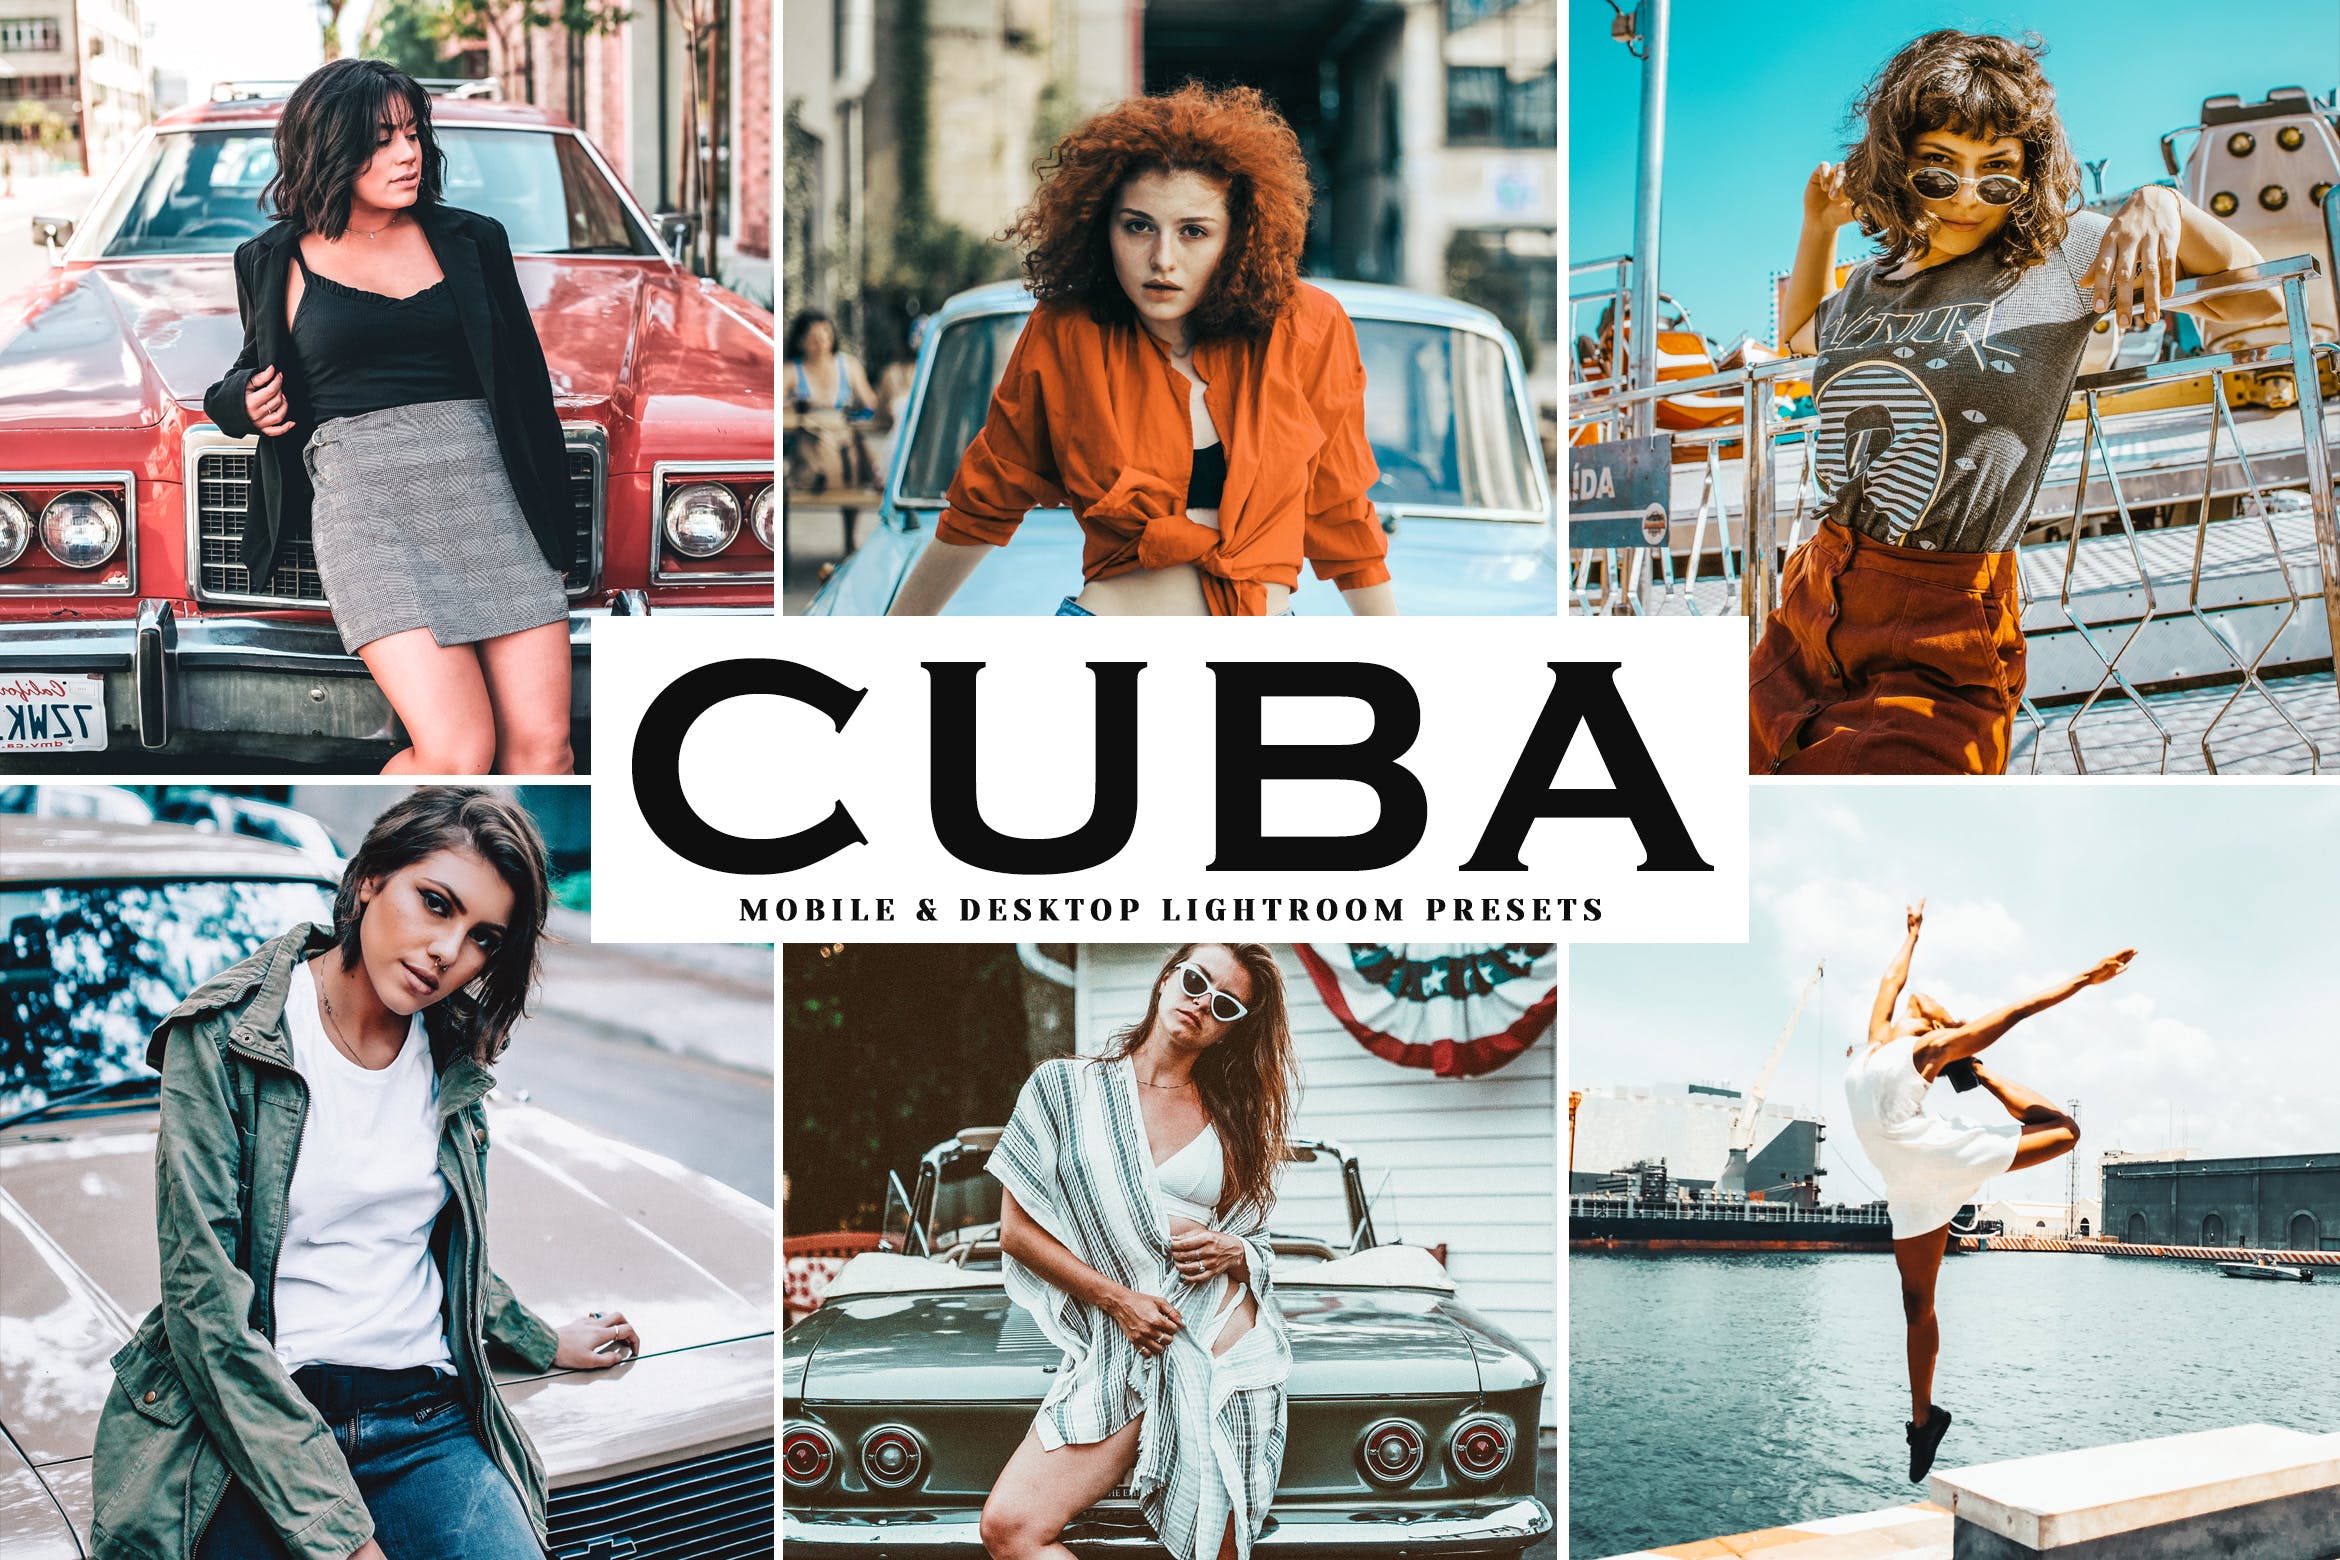 复古风格照片调色滤镜亿图网易图库精选LR预设 Cuba Mobile & Desktop Lightroom Presets插图